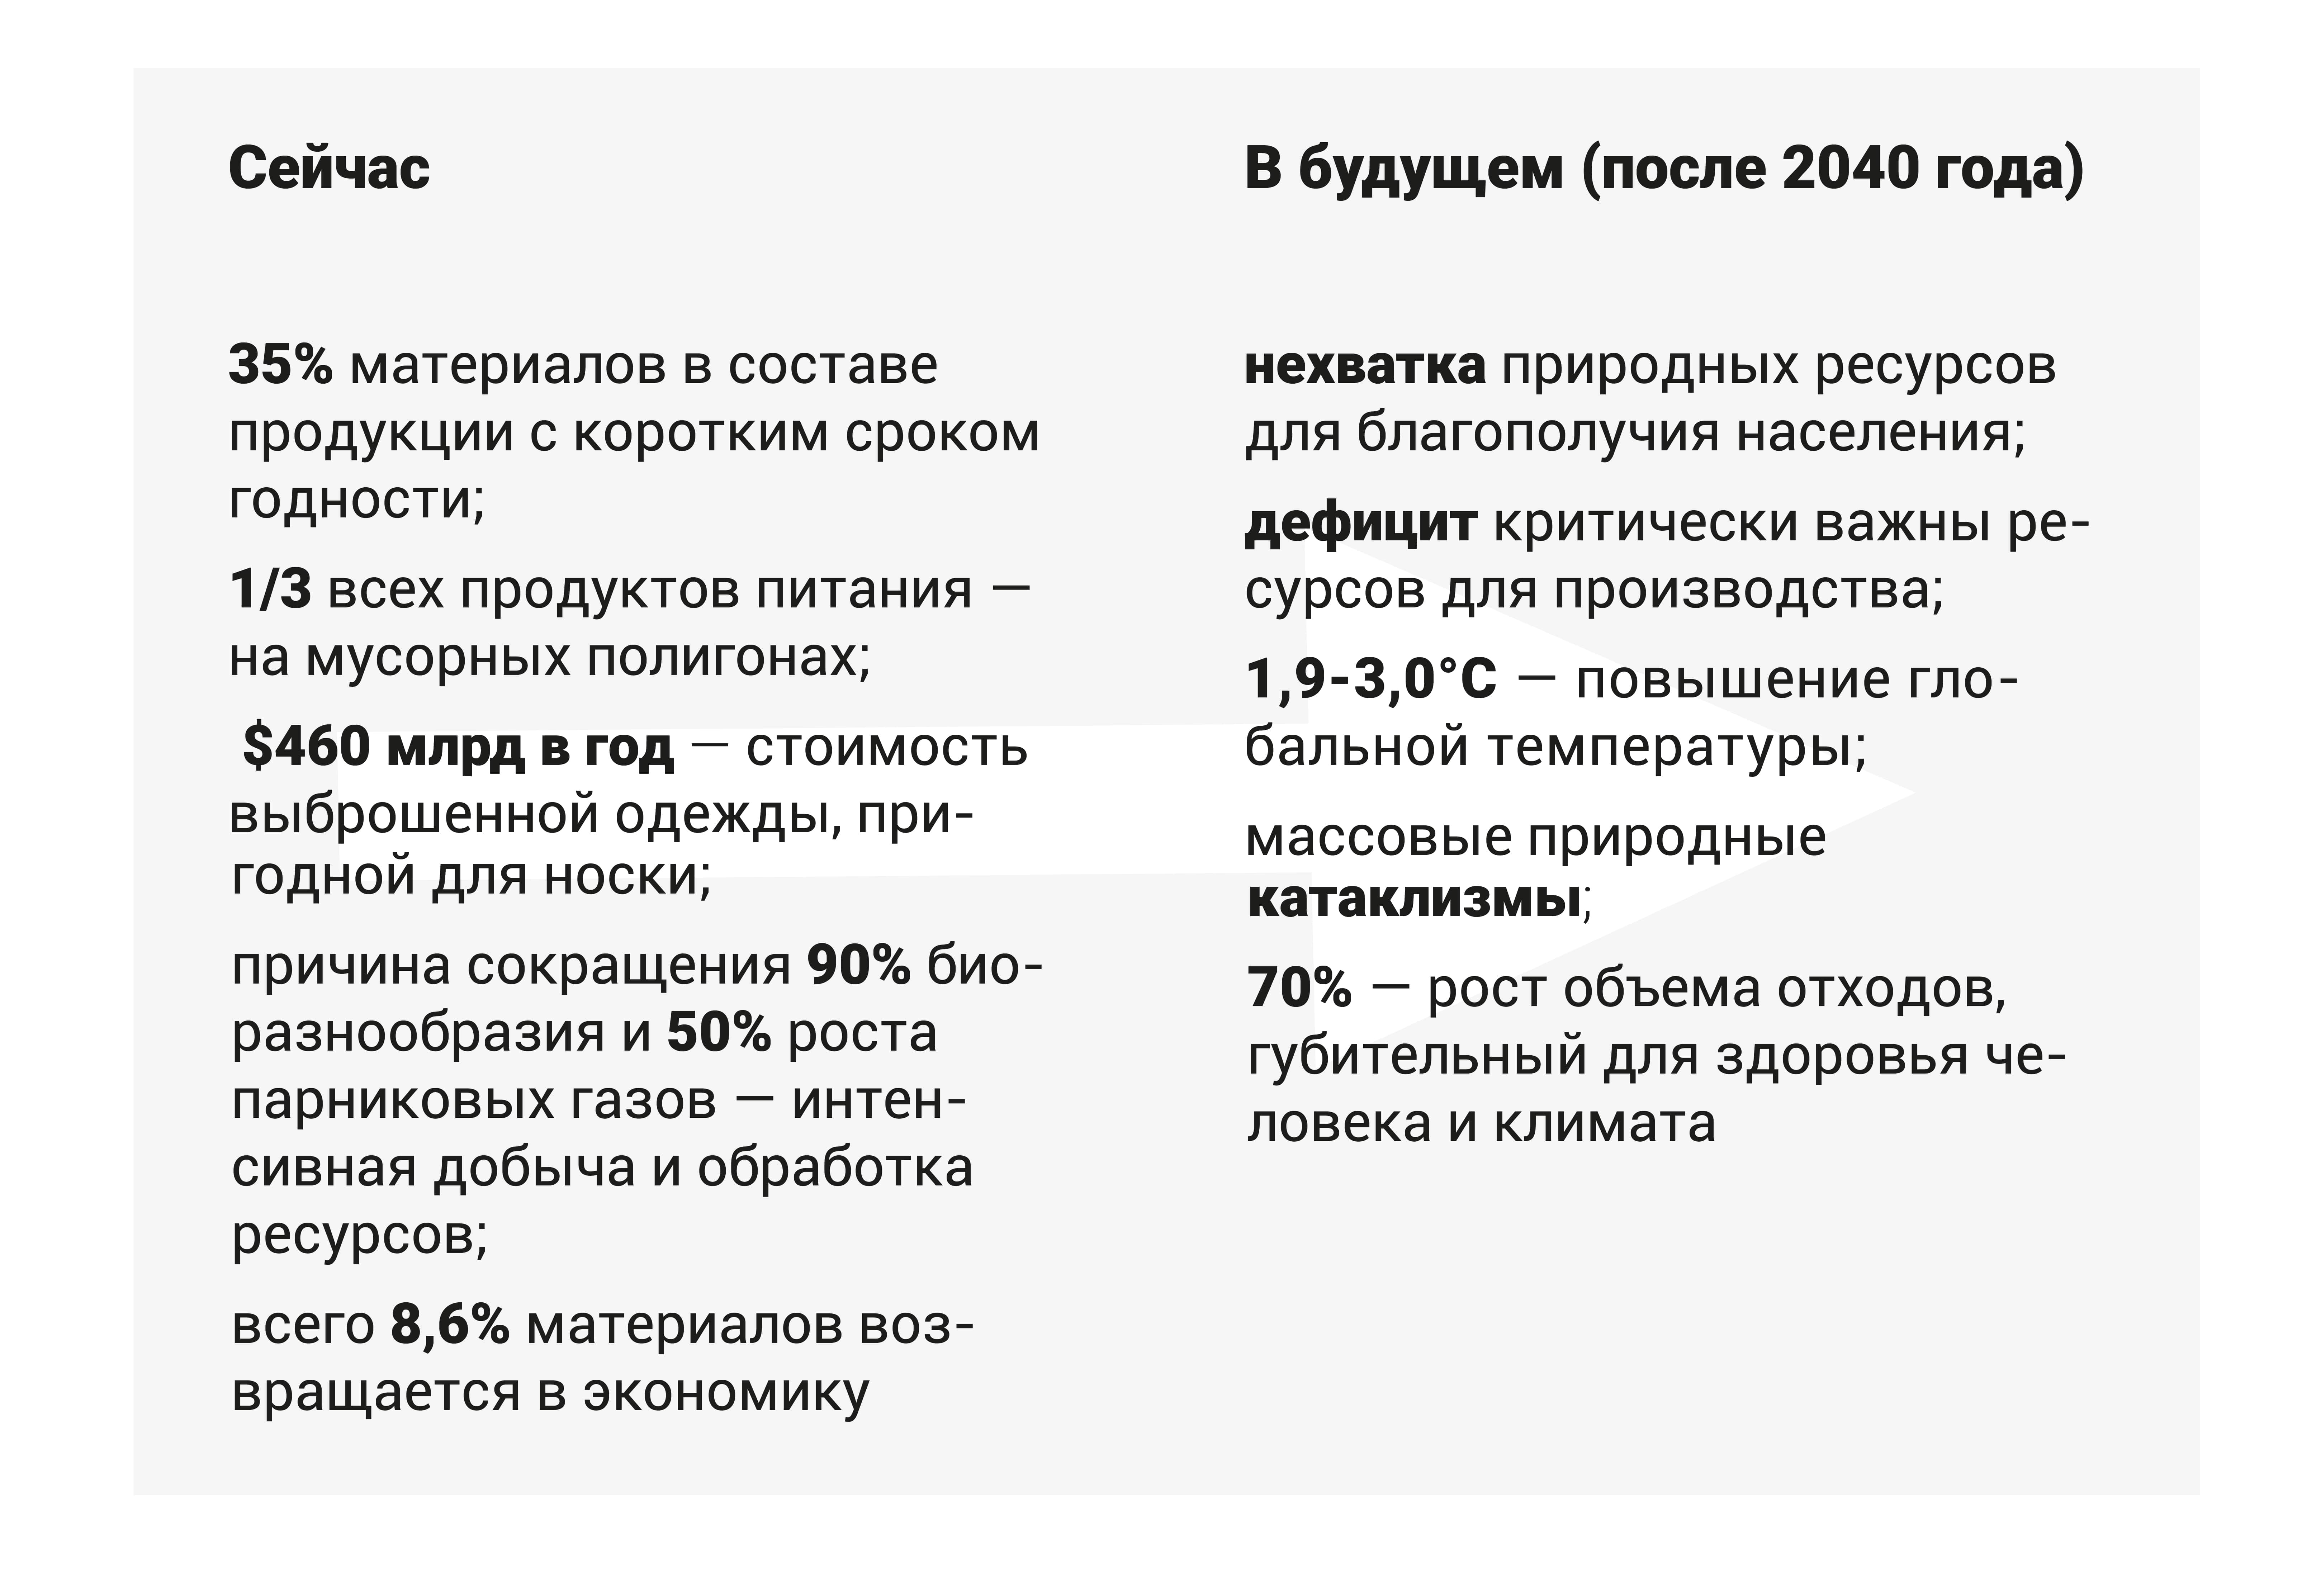 Экономические циклы в РФ: причины, последствия, перспективы